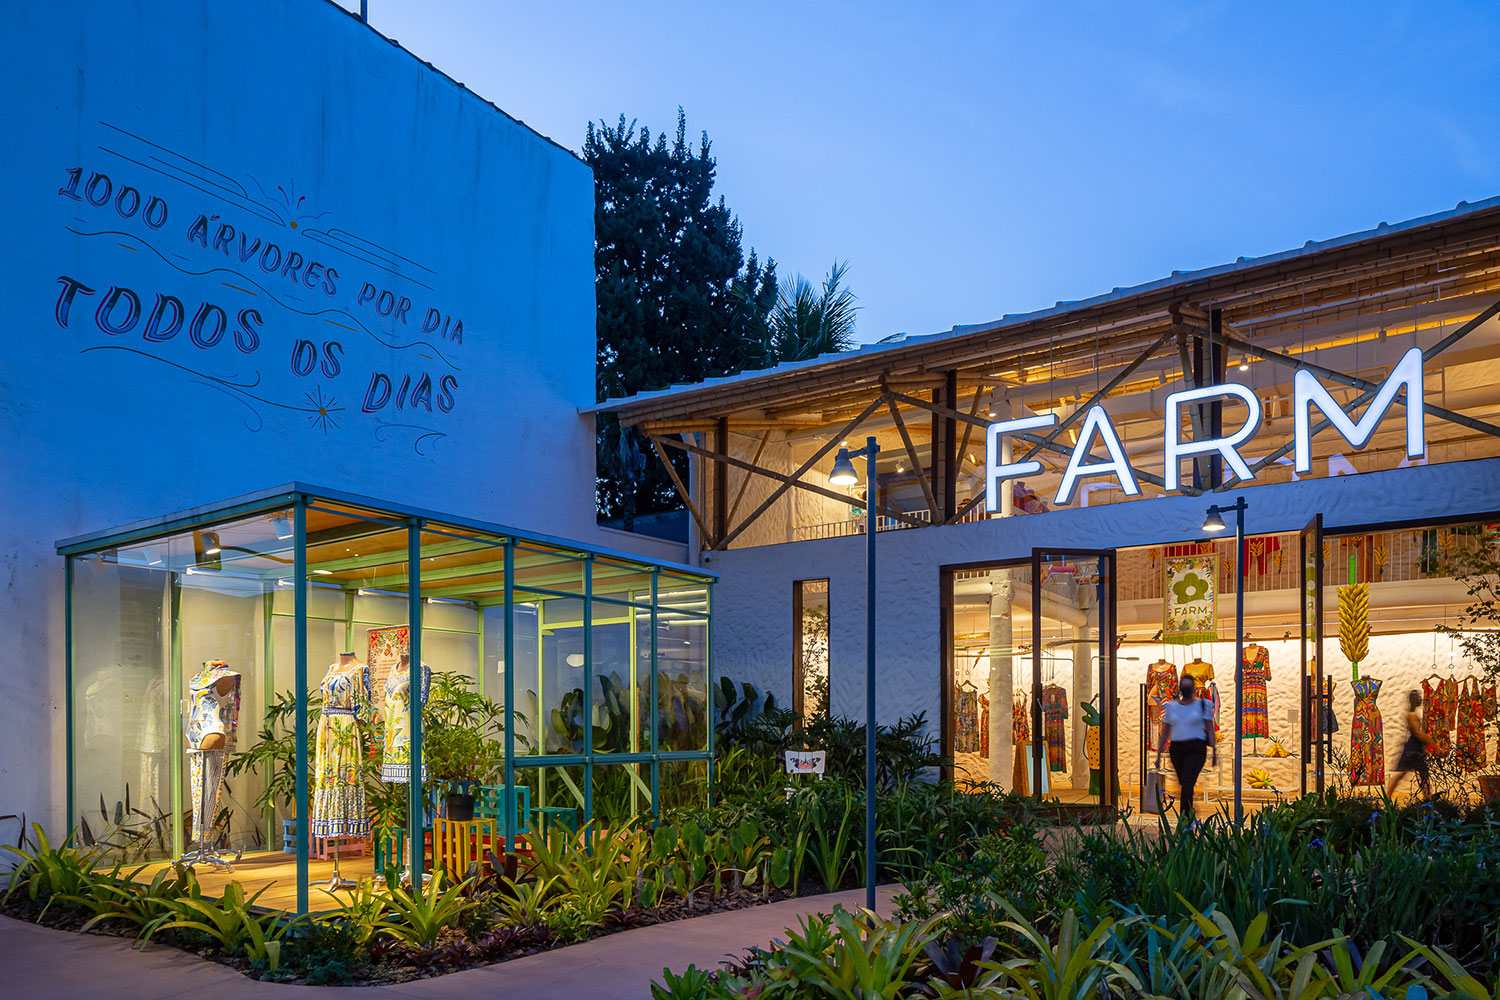 Fachada da loja Farm, no bairro de Moema, em São Paulo, Brasil. Projeto do escritório de arquitetura Rosenbaum.